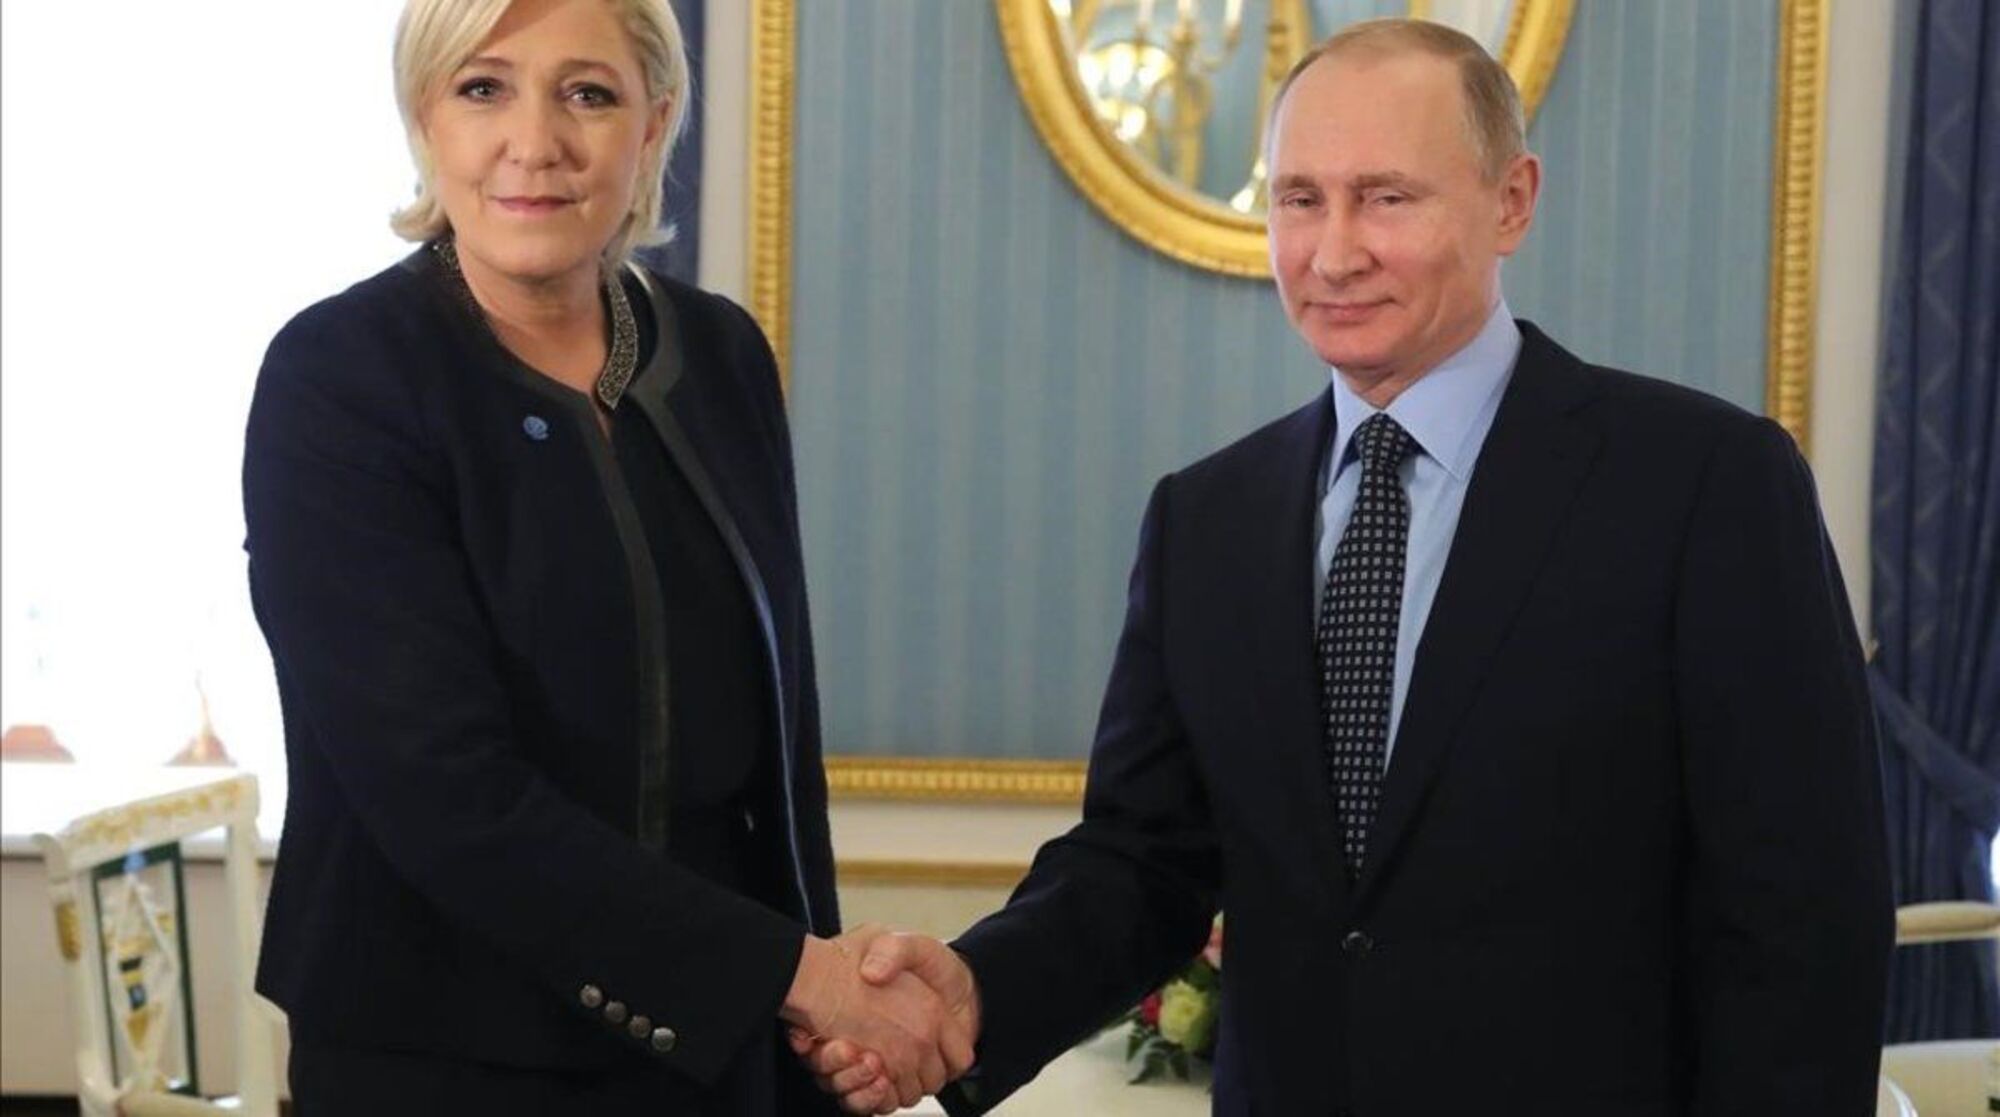 Un milió de fulletons de Le Pen, a la brossa per culpa de Putin